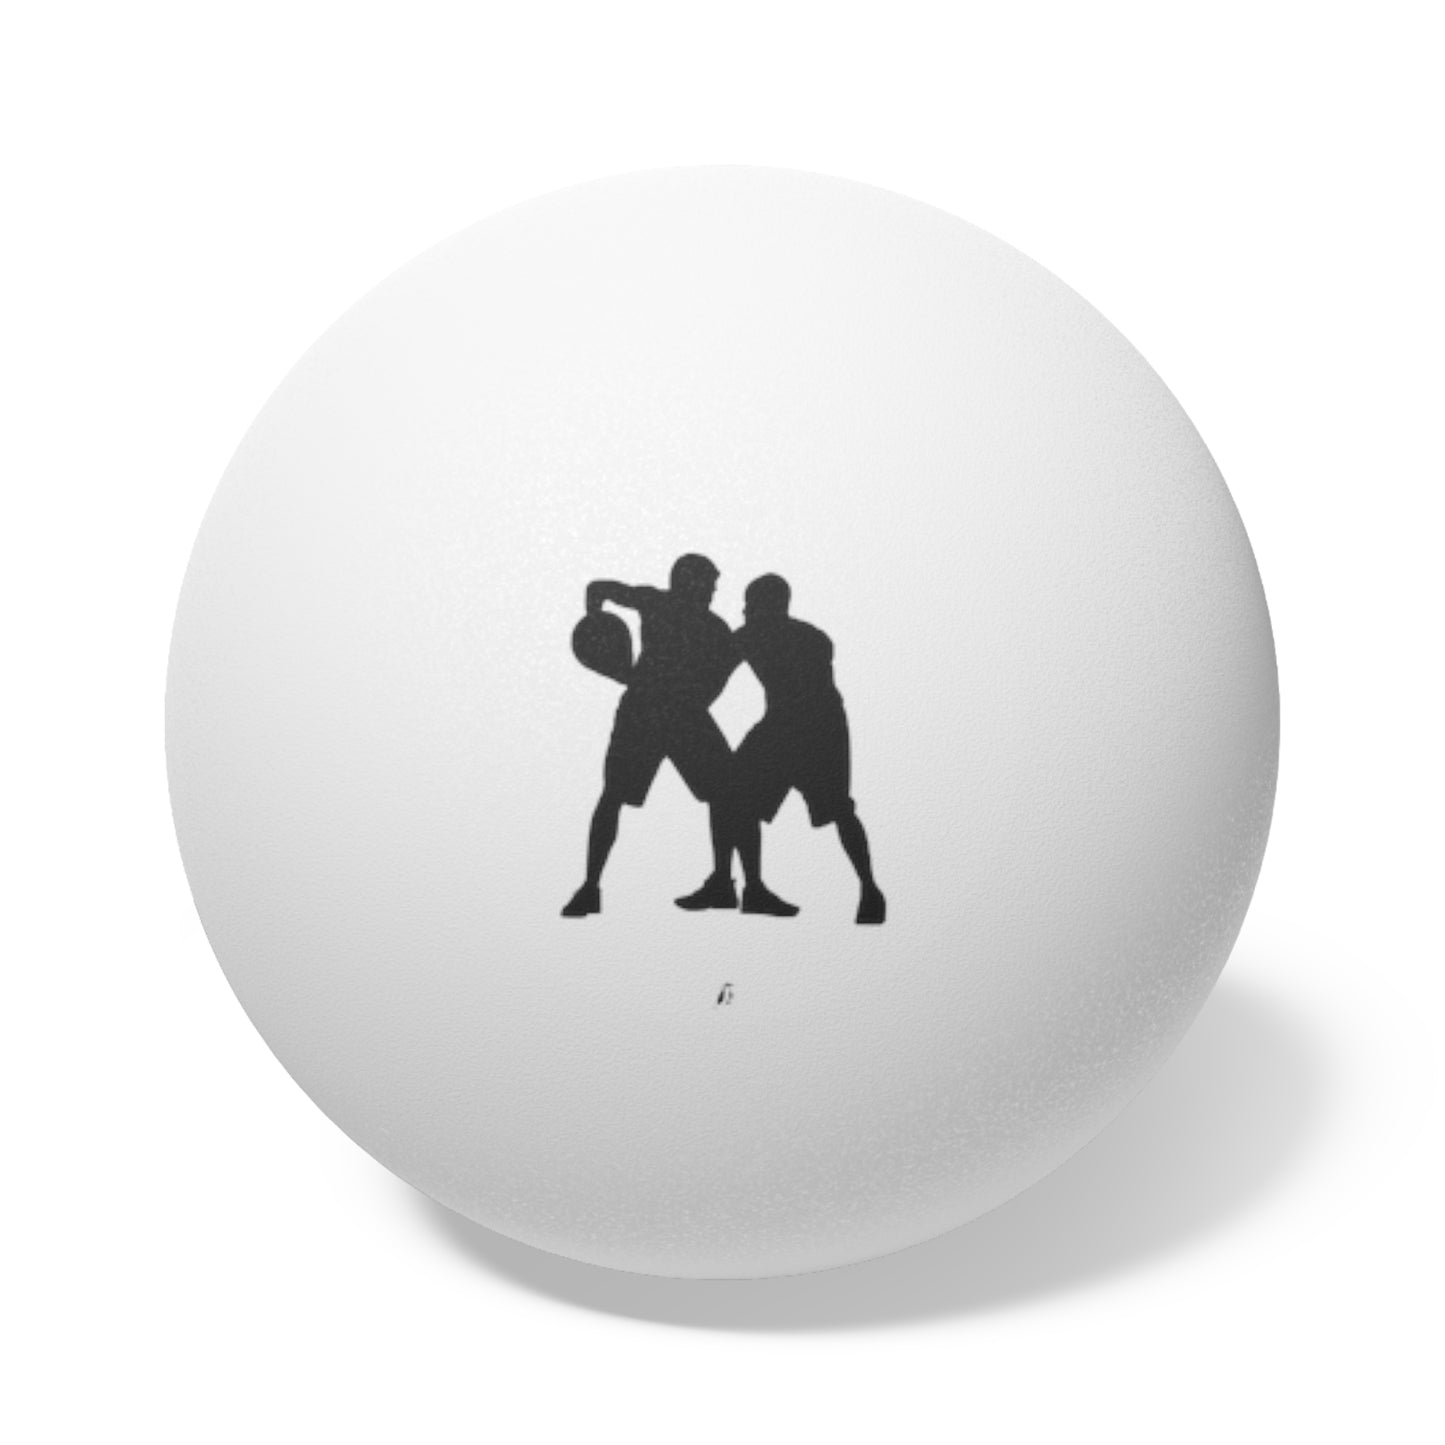 Ping Pong Balls, 6 pcs: Basketball